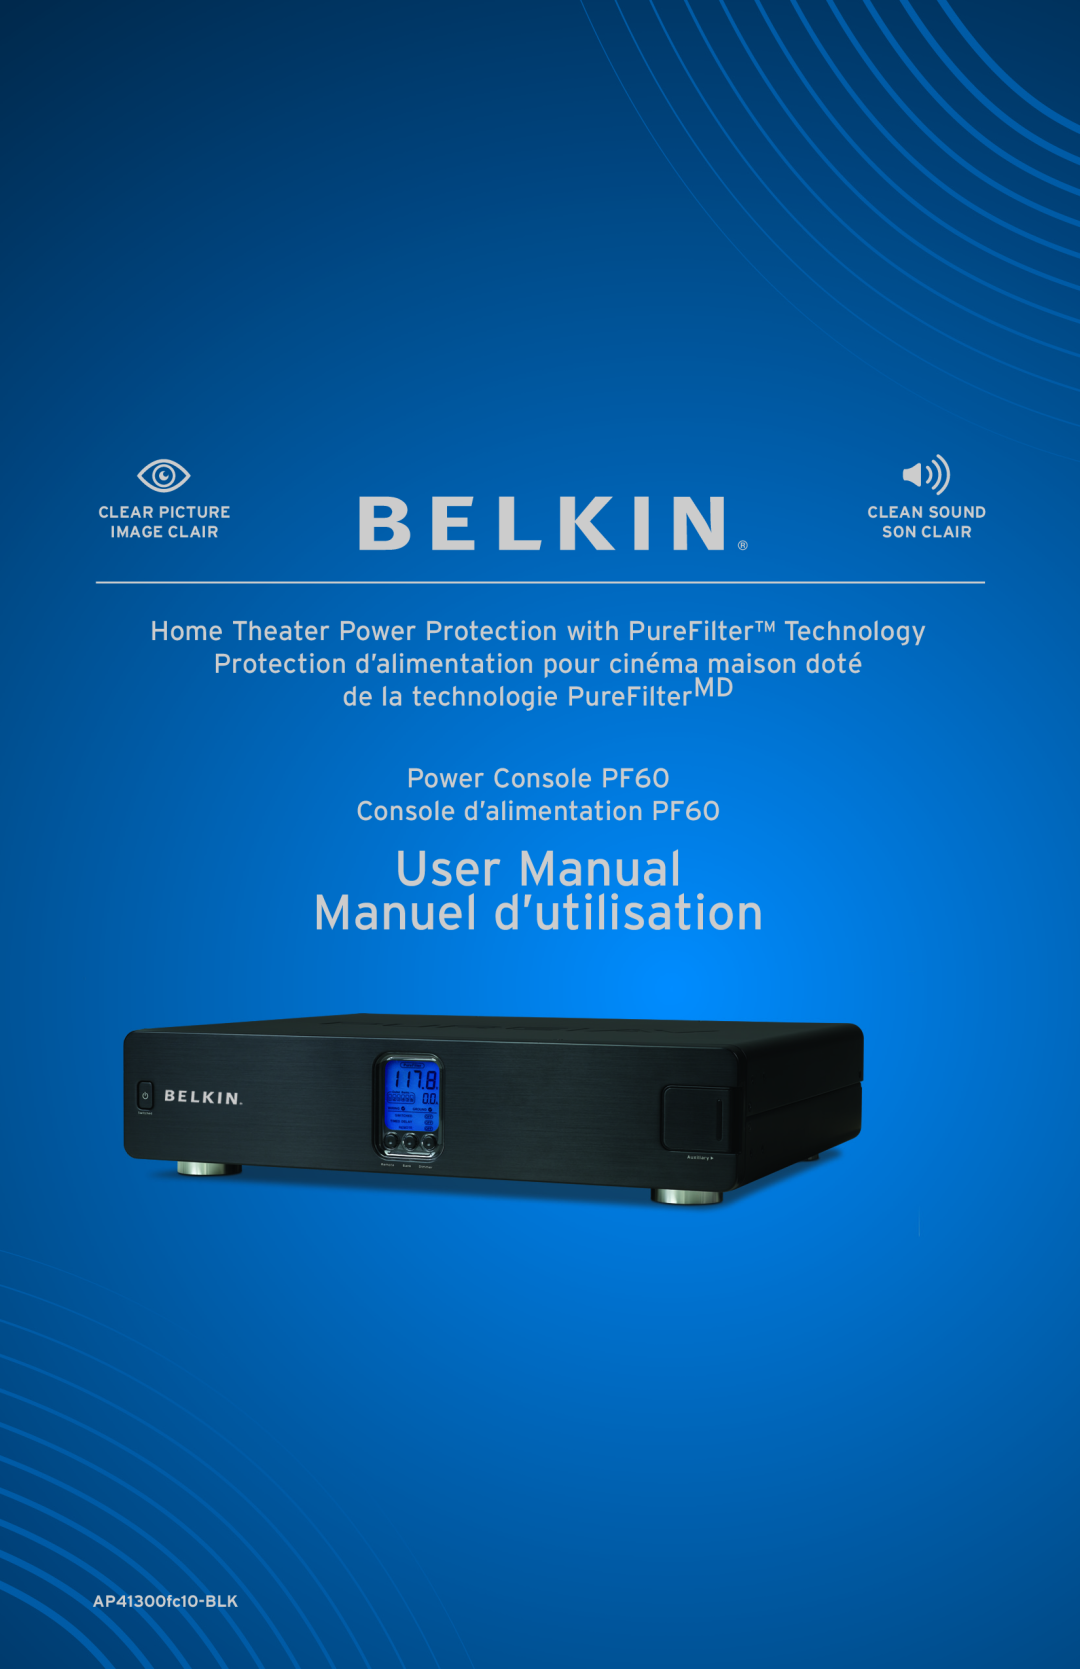 Belkin AP41300fc12-BLK user manual User Manual Manuel d’utilisation, Protection d’alimentation pour cinéma maison doté 